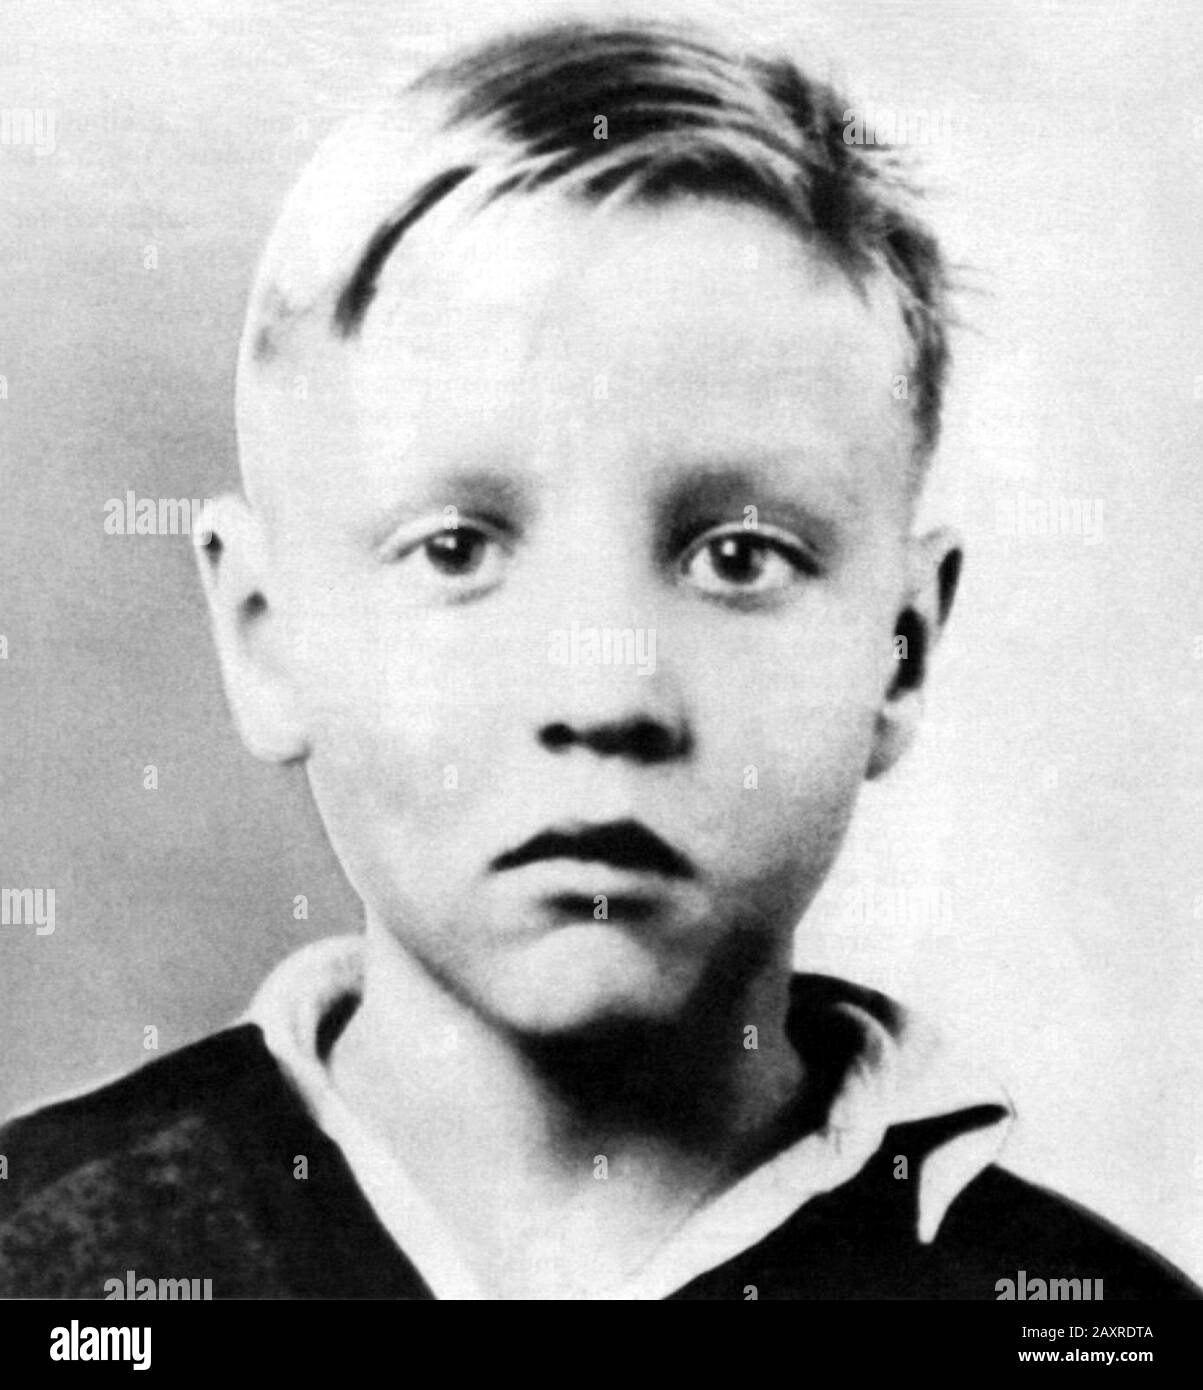 1945 Ca, Tupelo, USA : la chanteuse de rock'n Roll la plus célèbre ELVIS PRESLEY ( 1935 - 1977 ) quand était un jeune garçon . Photographe undentifié. - MUSIQUE - MUSICA - ROCK - HISTOIRE - FOTO STORICHE - quand était un enfant - enfants - célébrités célébrité - célébrité personaggi famosi da bambini - bambini - enfants - infanzia - enfance -- ARCHIVIO GBB Banque D'Images